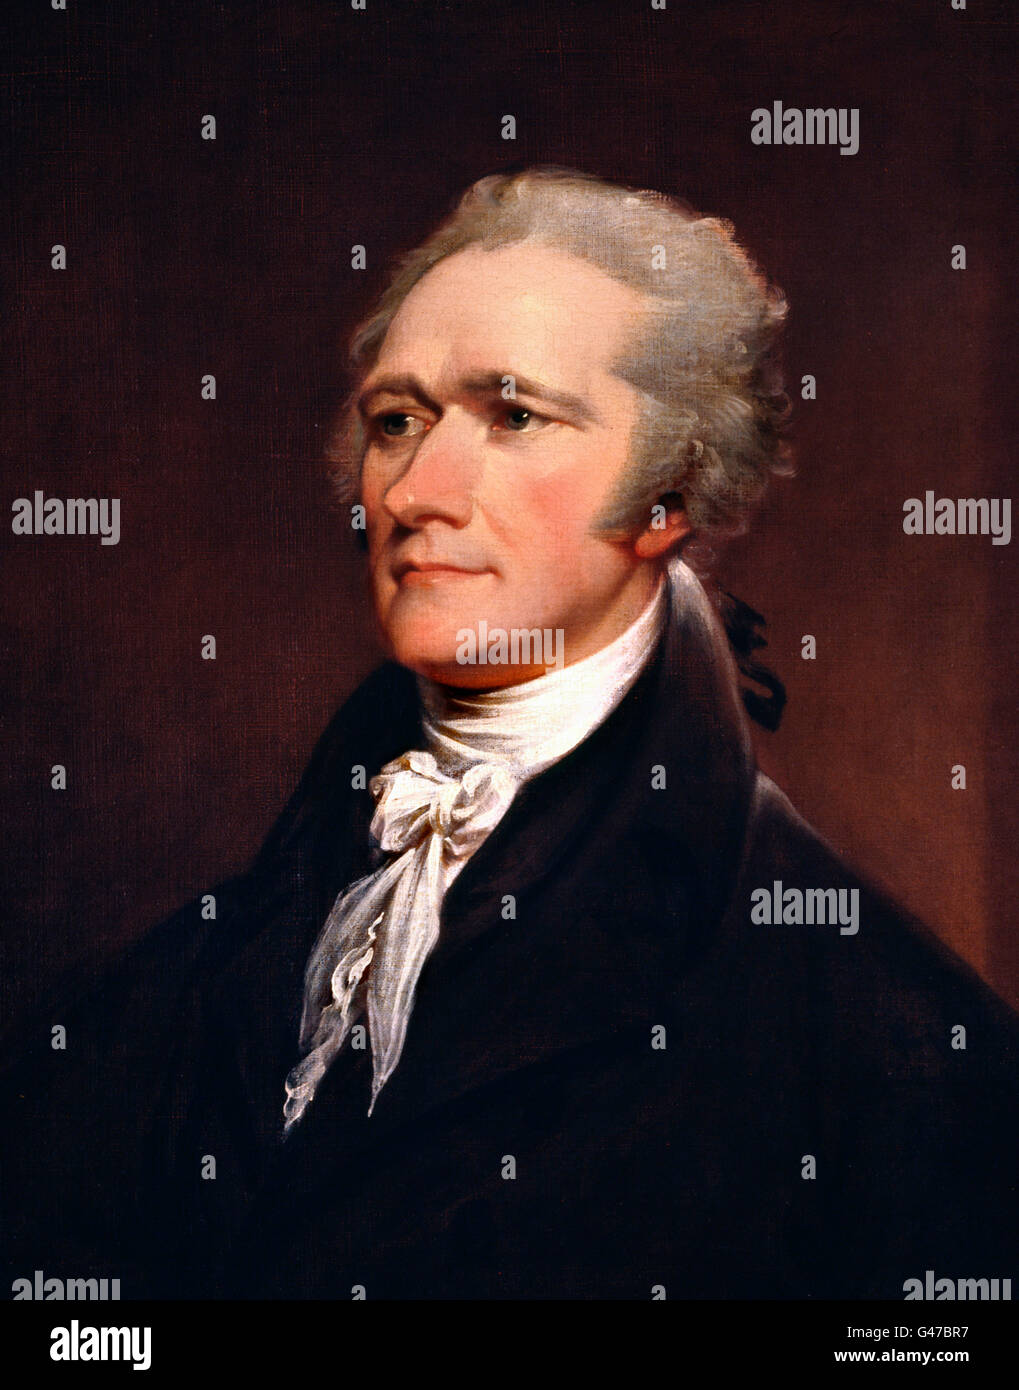 Alexander Hamilton (1755-1804). Ritratto di John Trumbull, olio su tela, 1806 Foto Stock